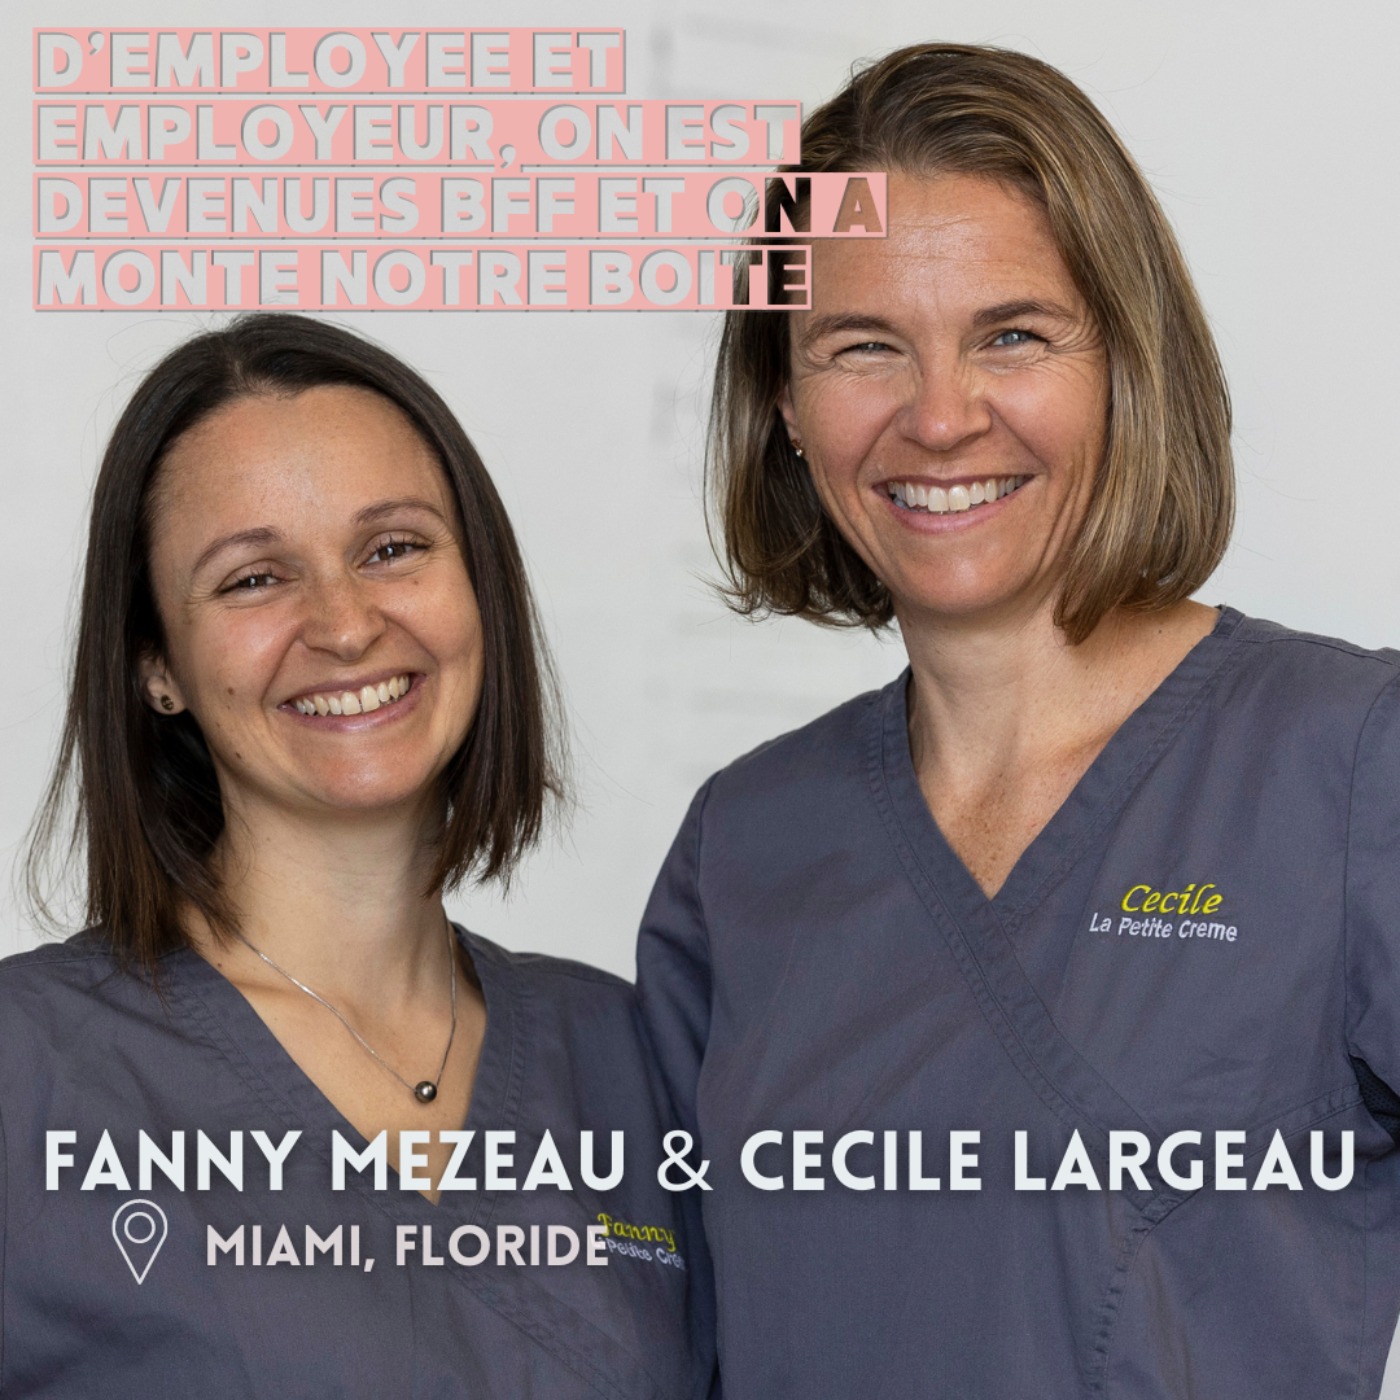 Cécile & Fanny (Miami) : D'employée & employeur, on est devenues BFF et on a monté notre boite